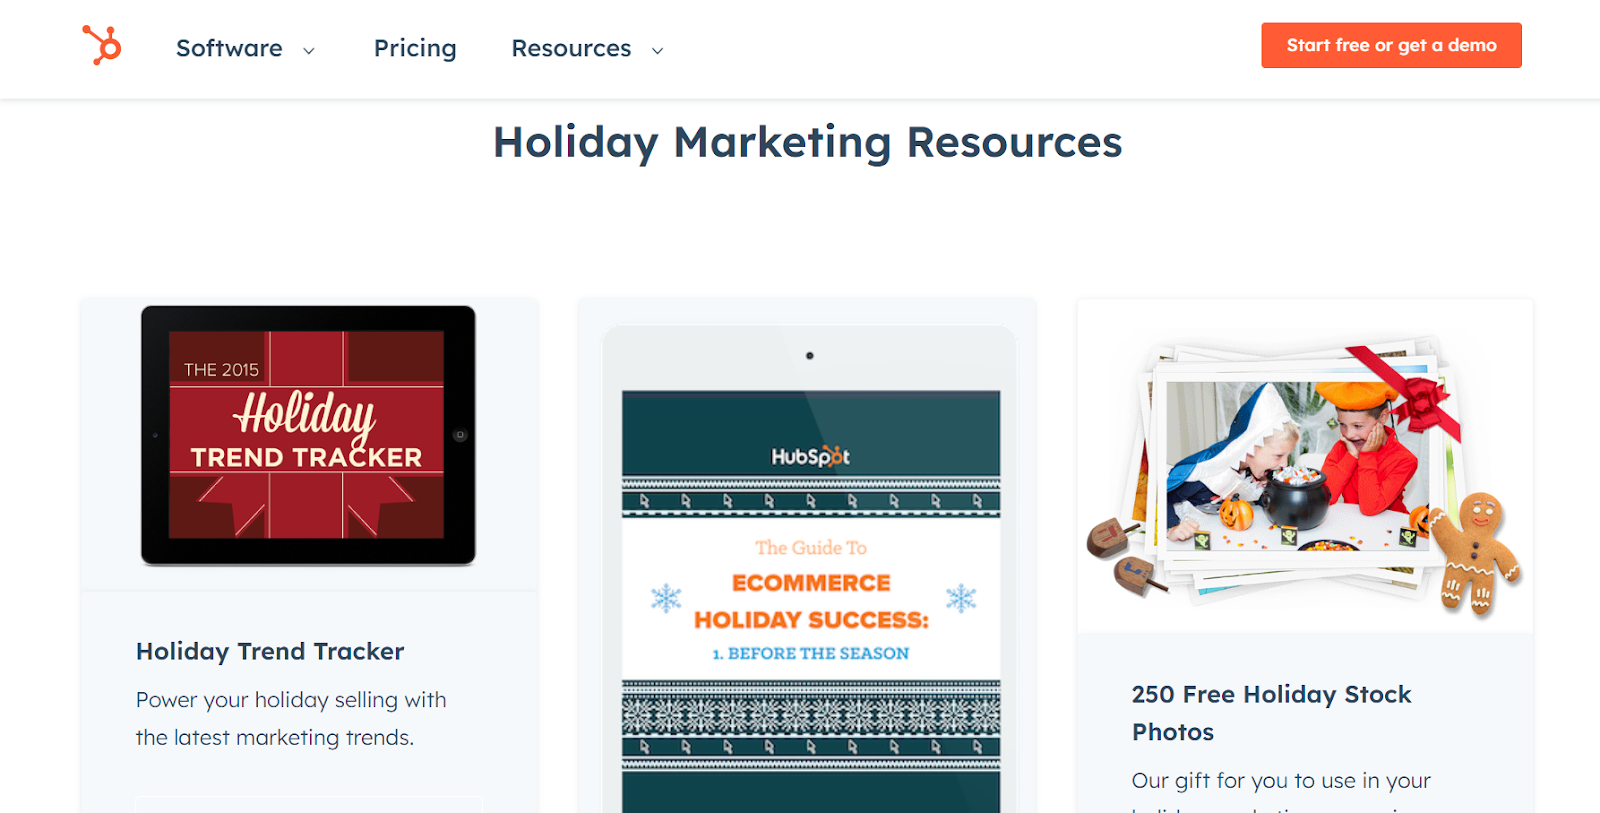 Hubspot holiday marketing guides